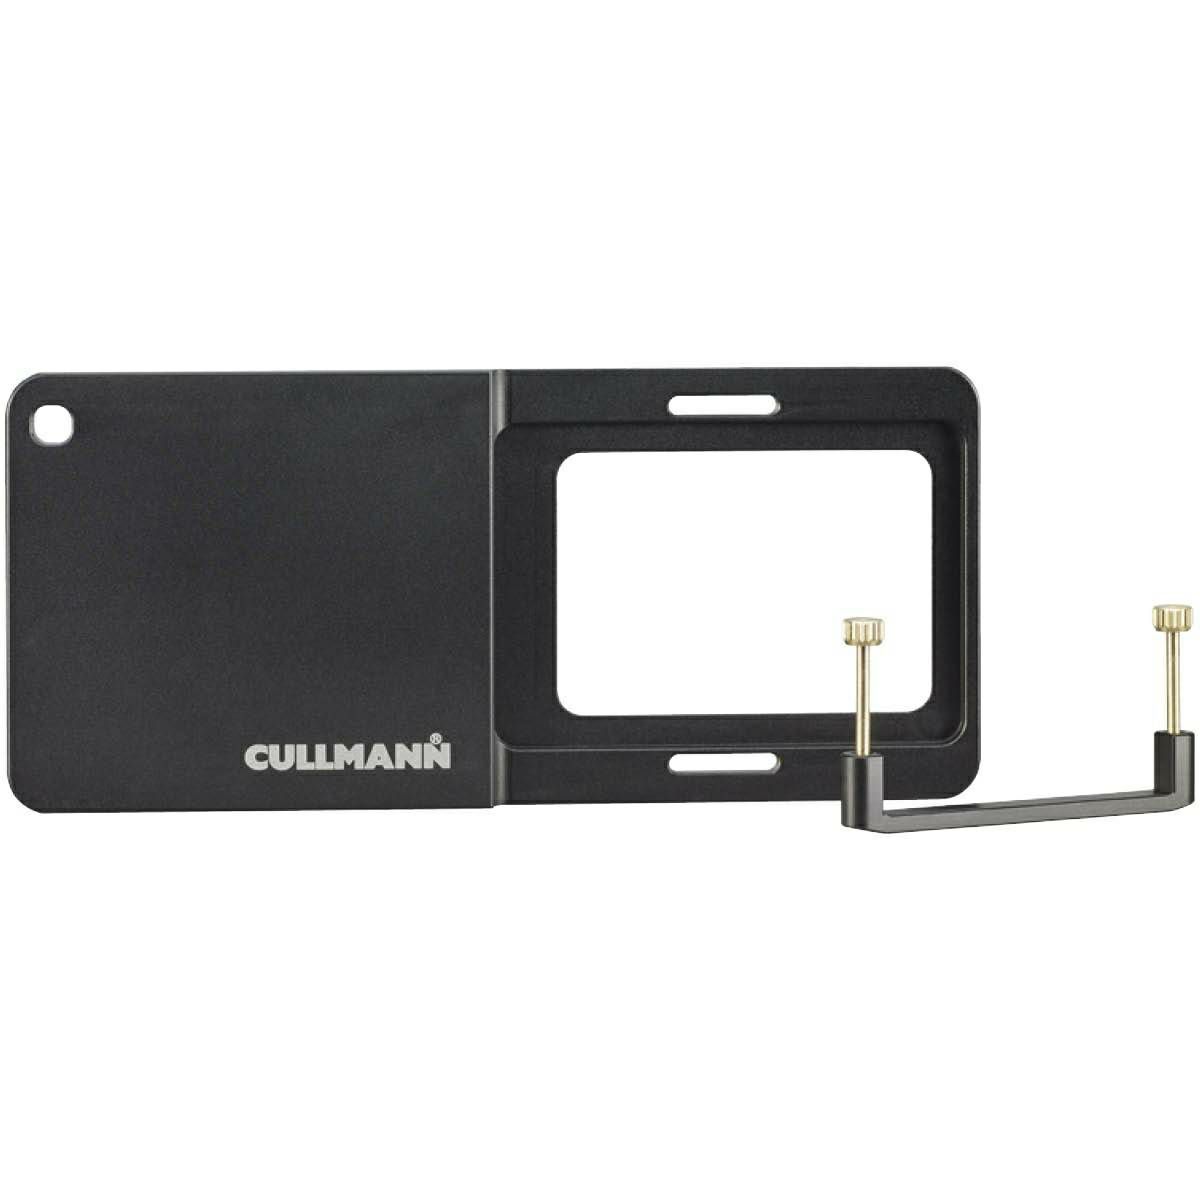 Cullmann Cross CX127 Adapter for Action Cams držač za akcijske kamere (41127)